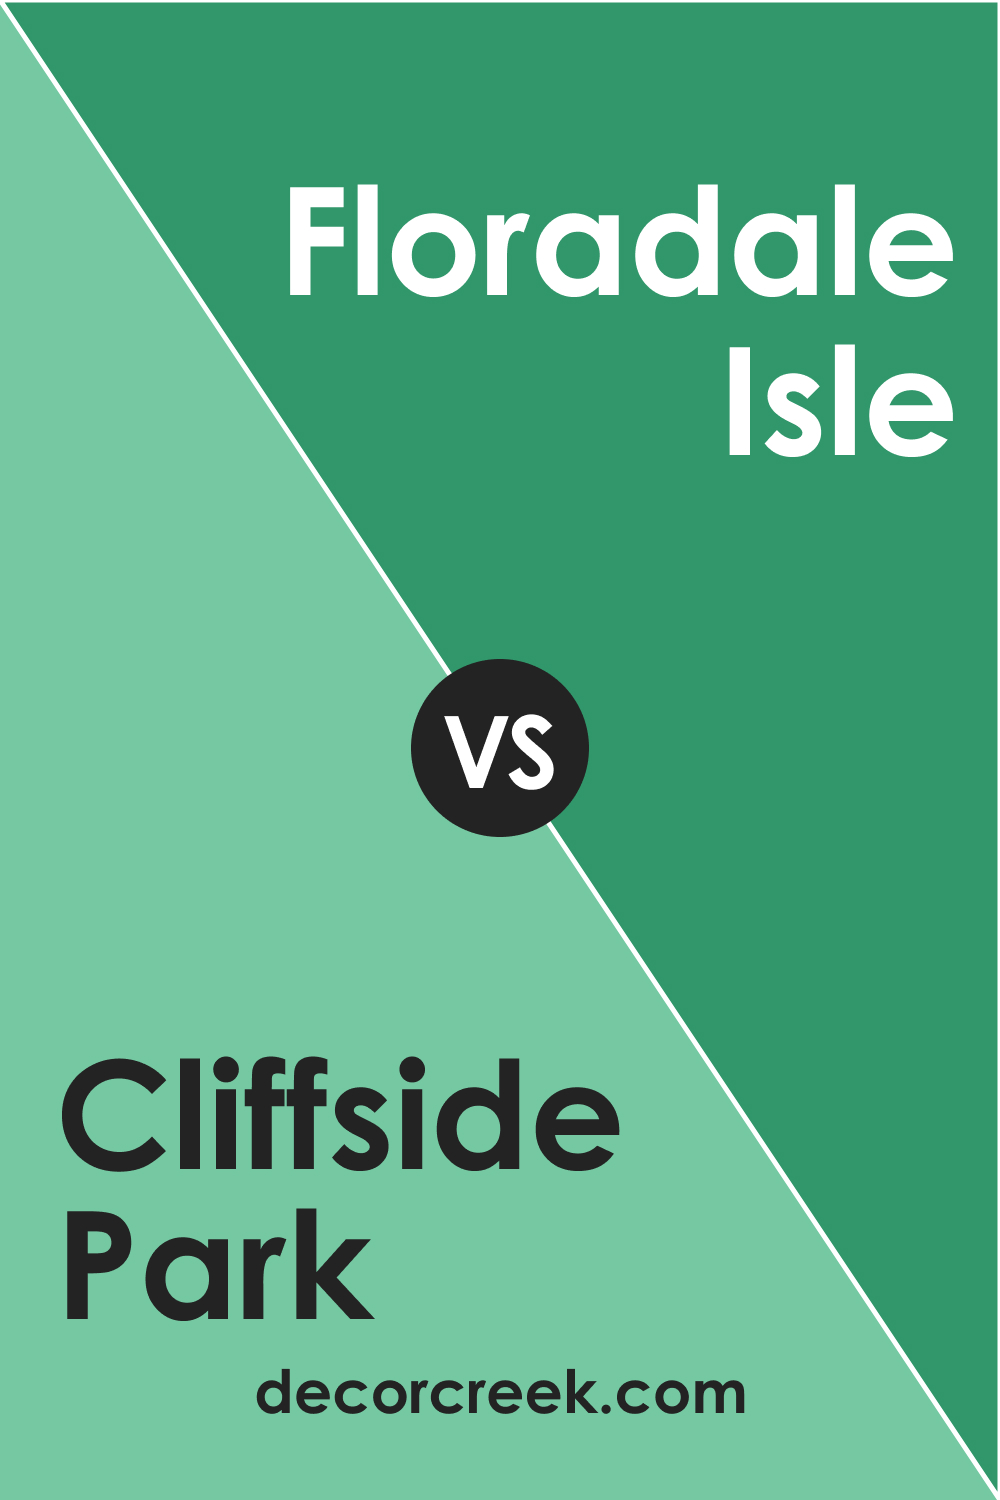 Cliffside Park 579 vs. BM 581 Floradale Isle